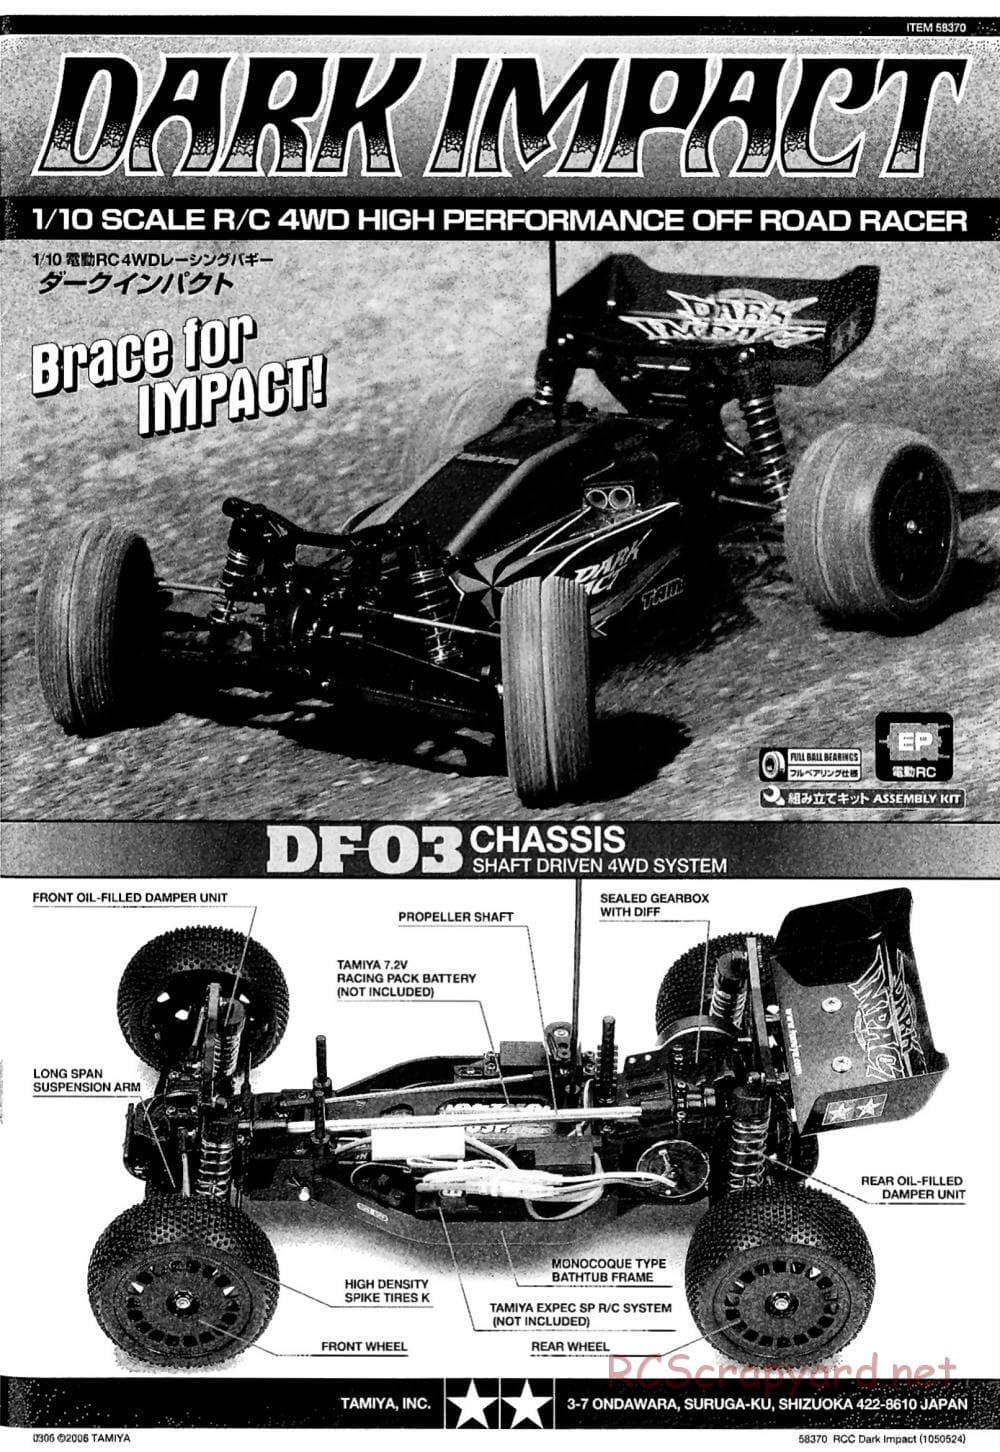 Tamiya - Dark Impact Chassis - Manual - Page 1